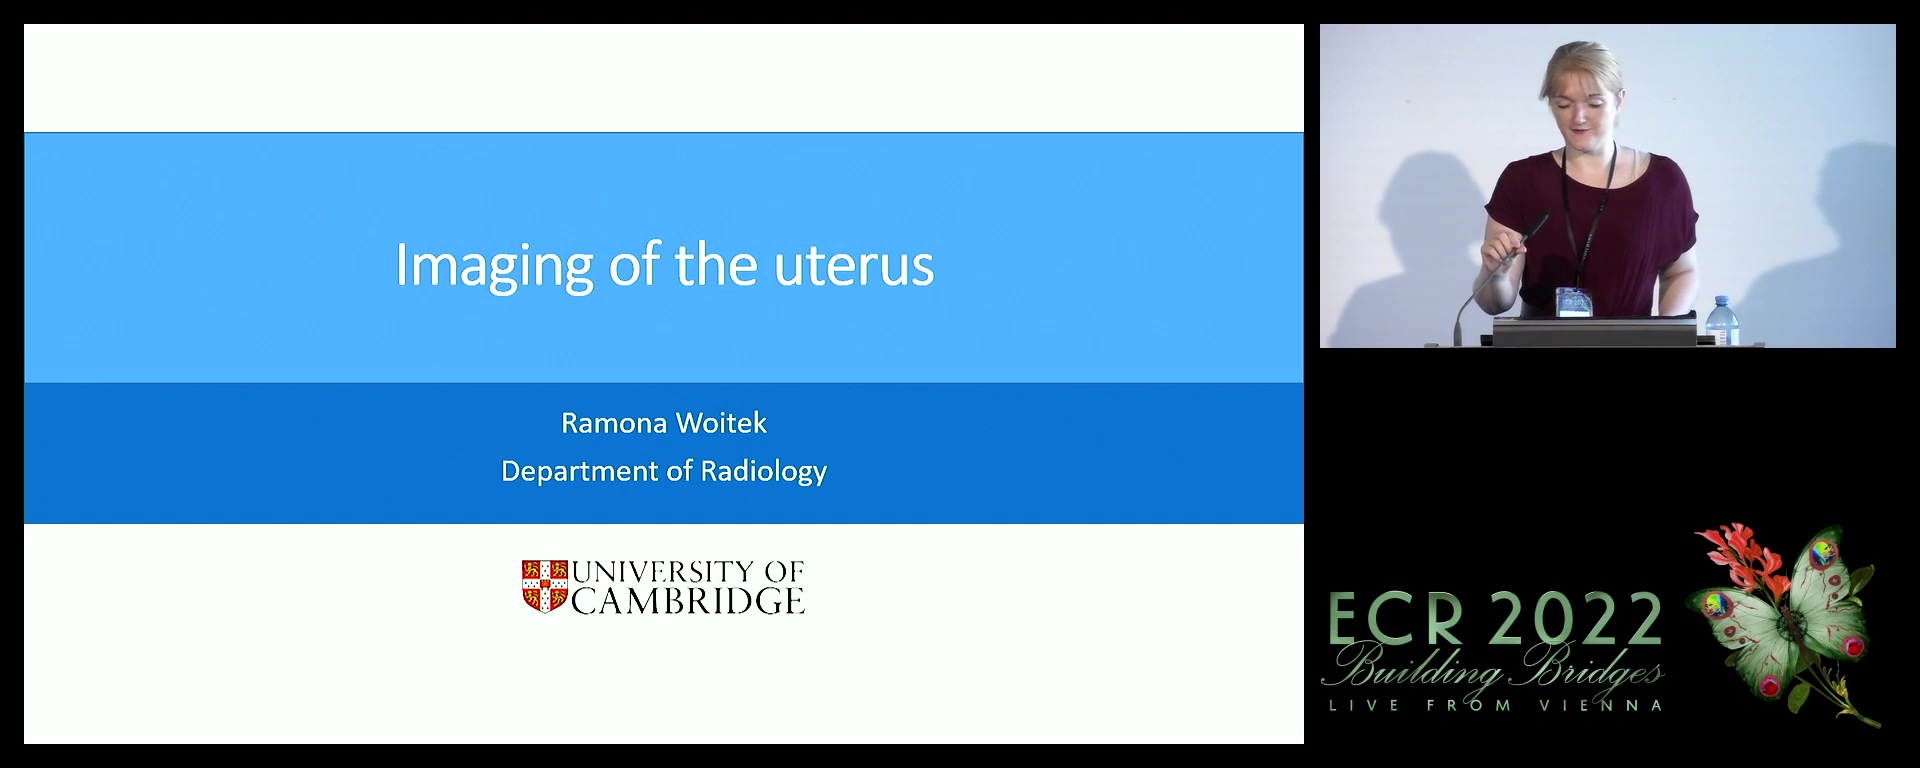 Imaging of the uterus